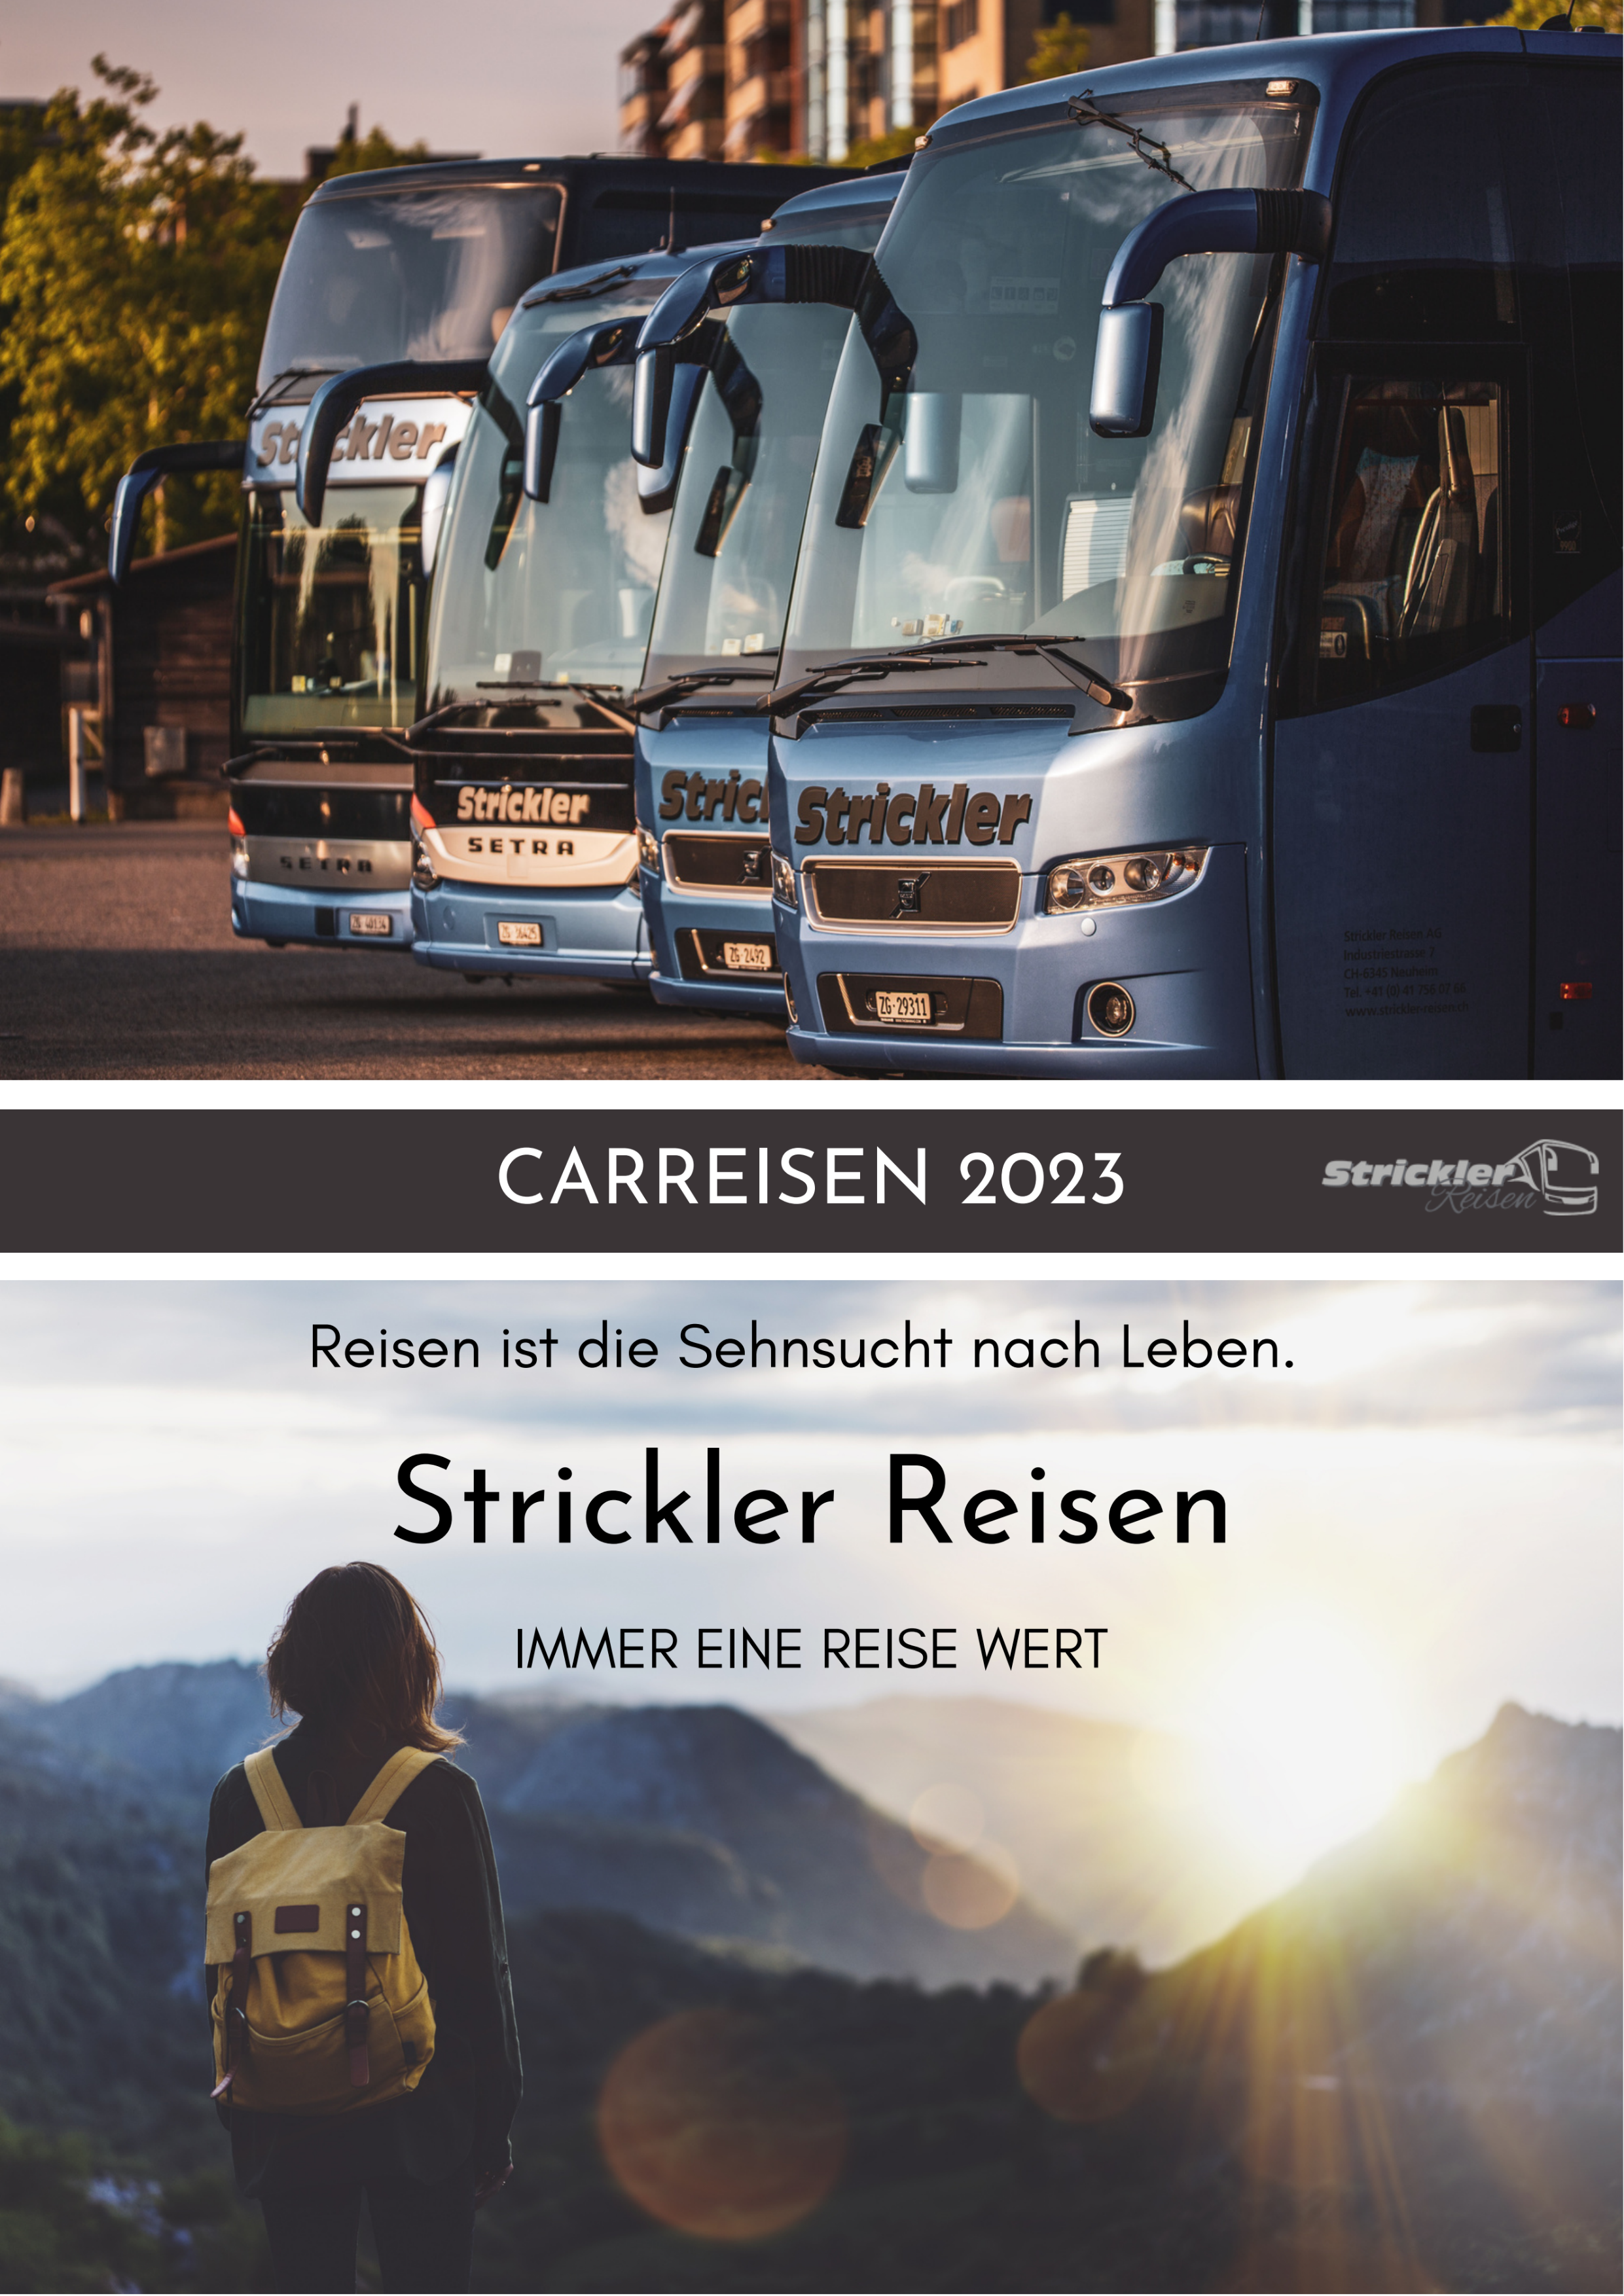 Carreisen 2023